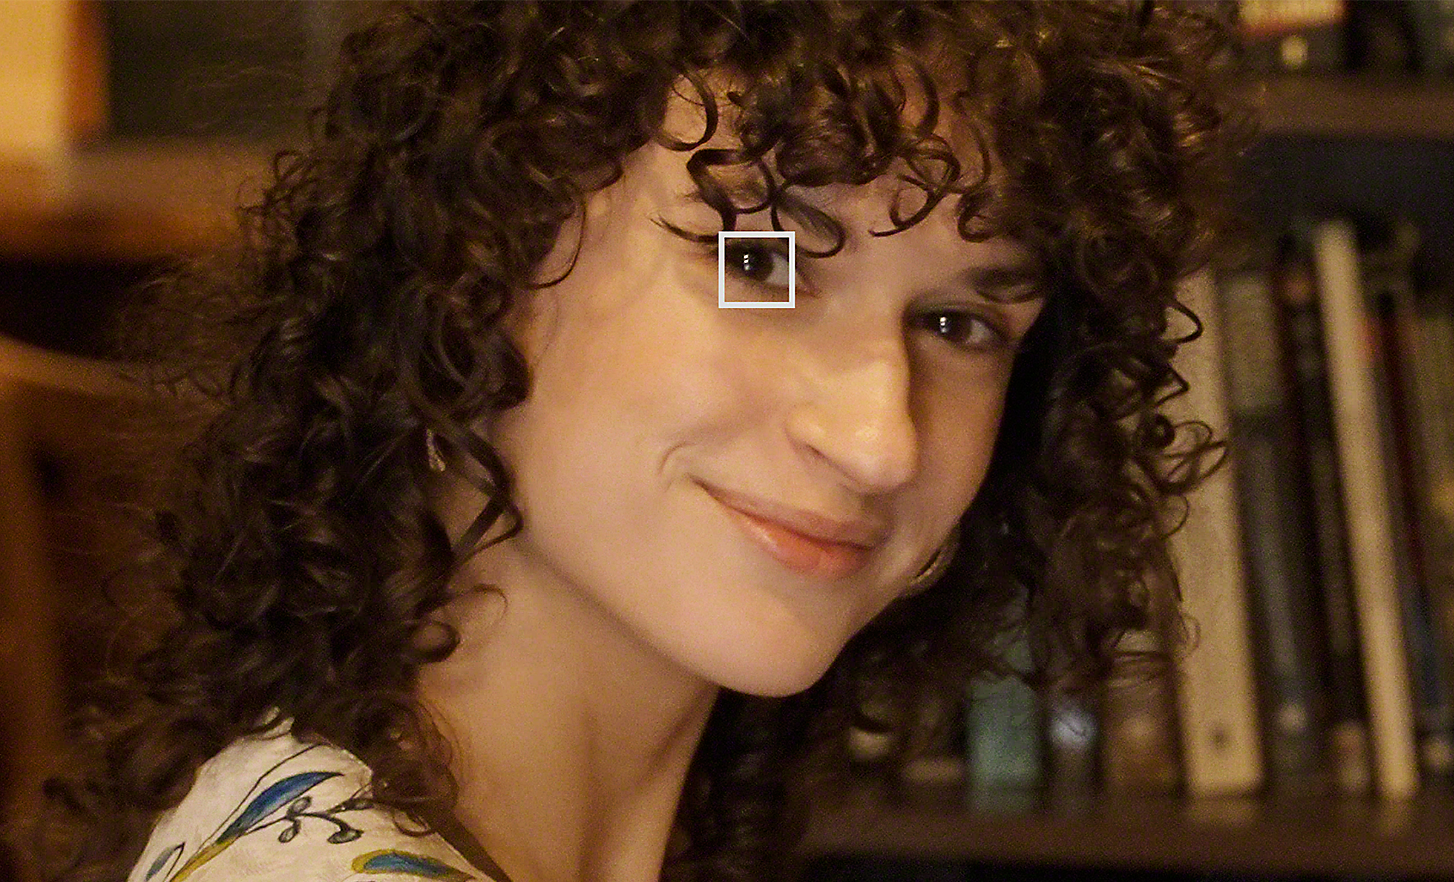 Femme dans une bibliothèque regardant l’objectif, l’un de ses yeux surmonté d’un petit carré blanc qui représente la mise au point automatique Eye AF pour les vidéos